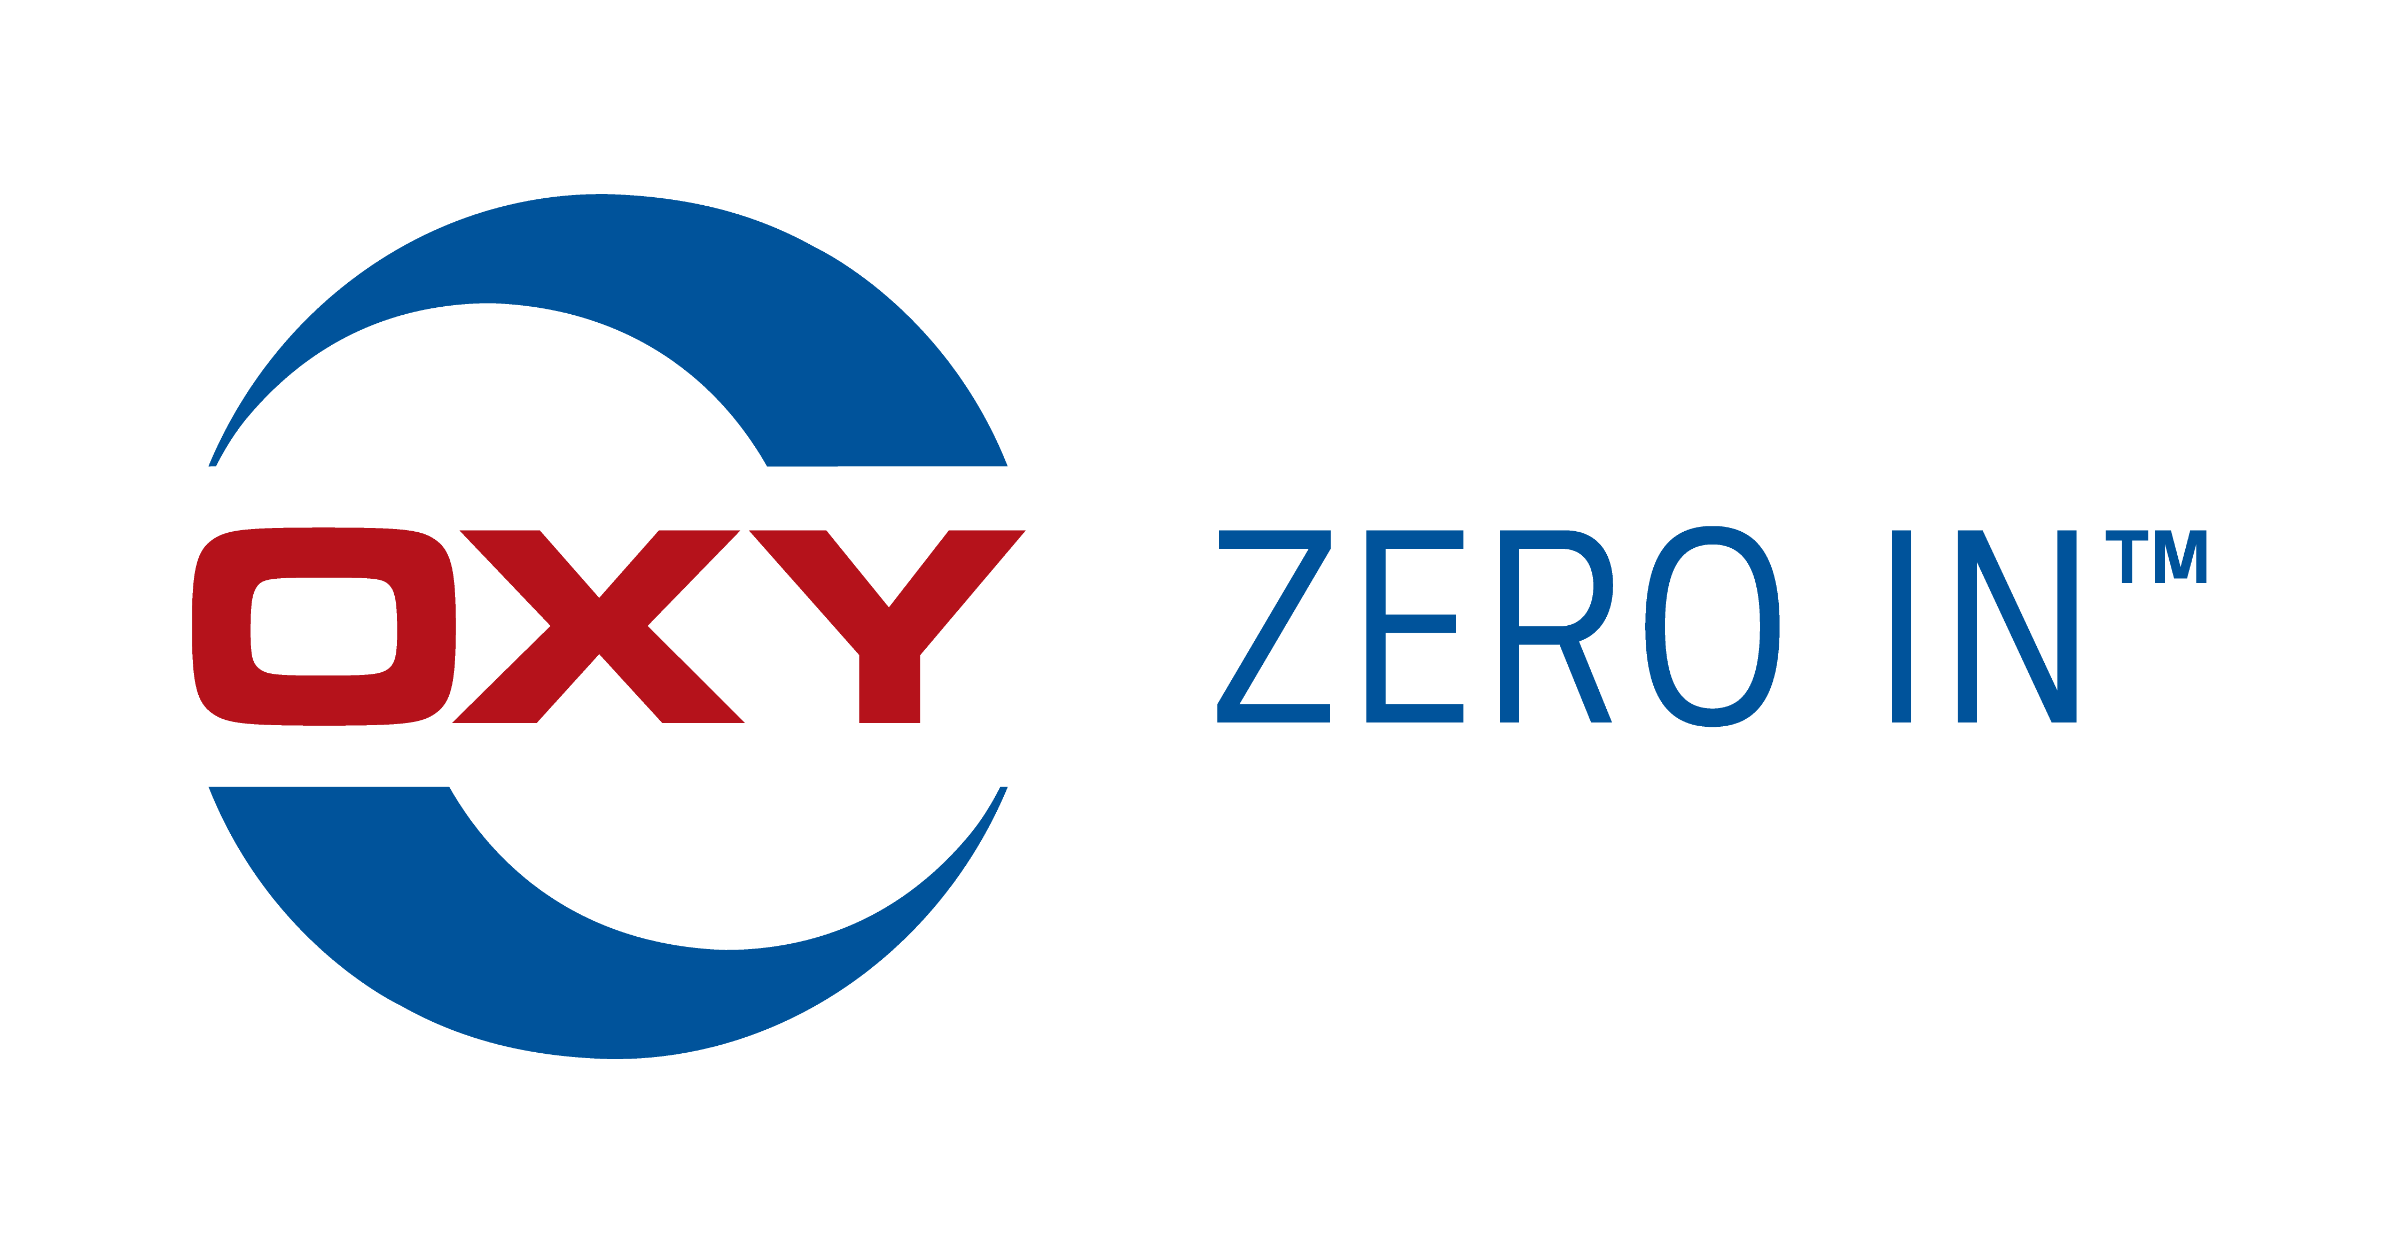 oxy zero in